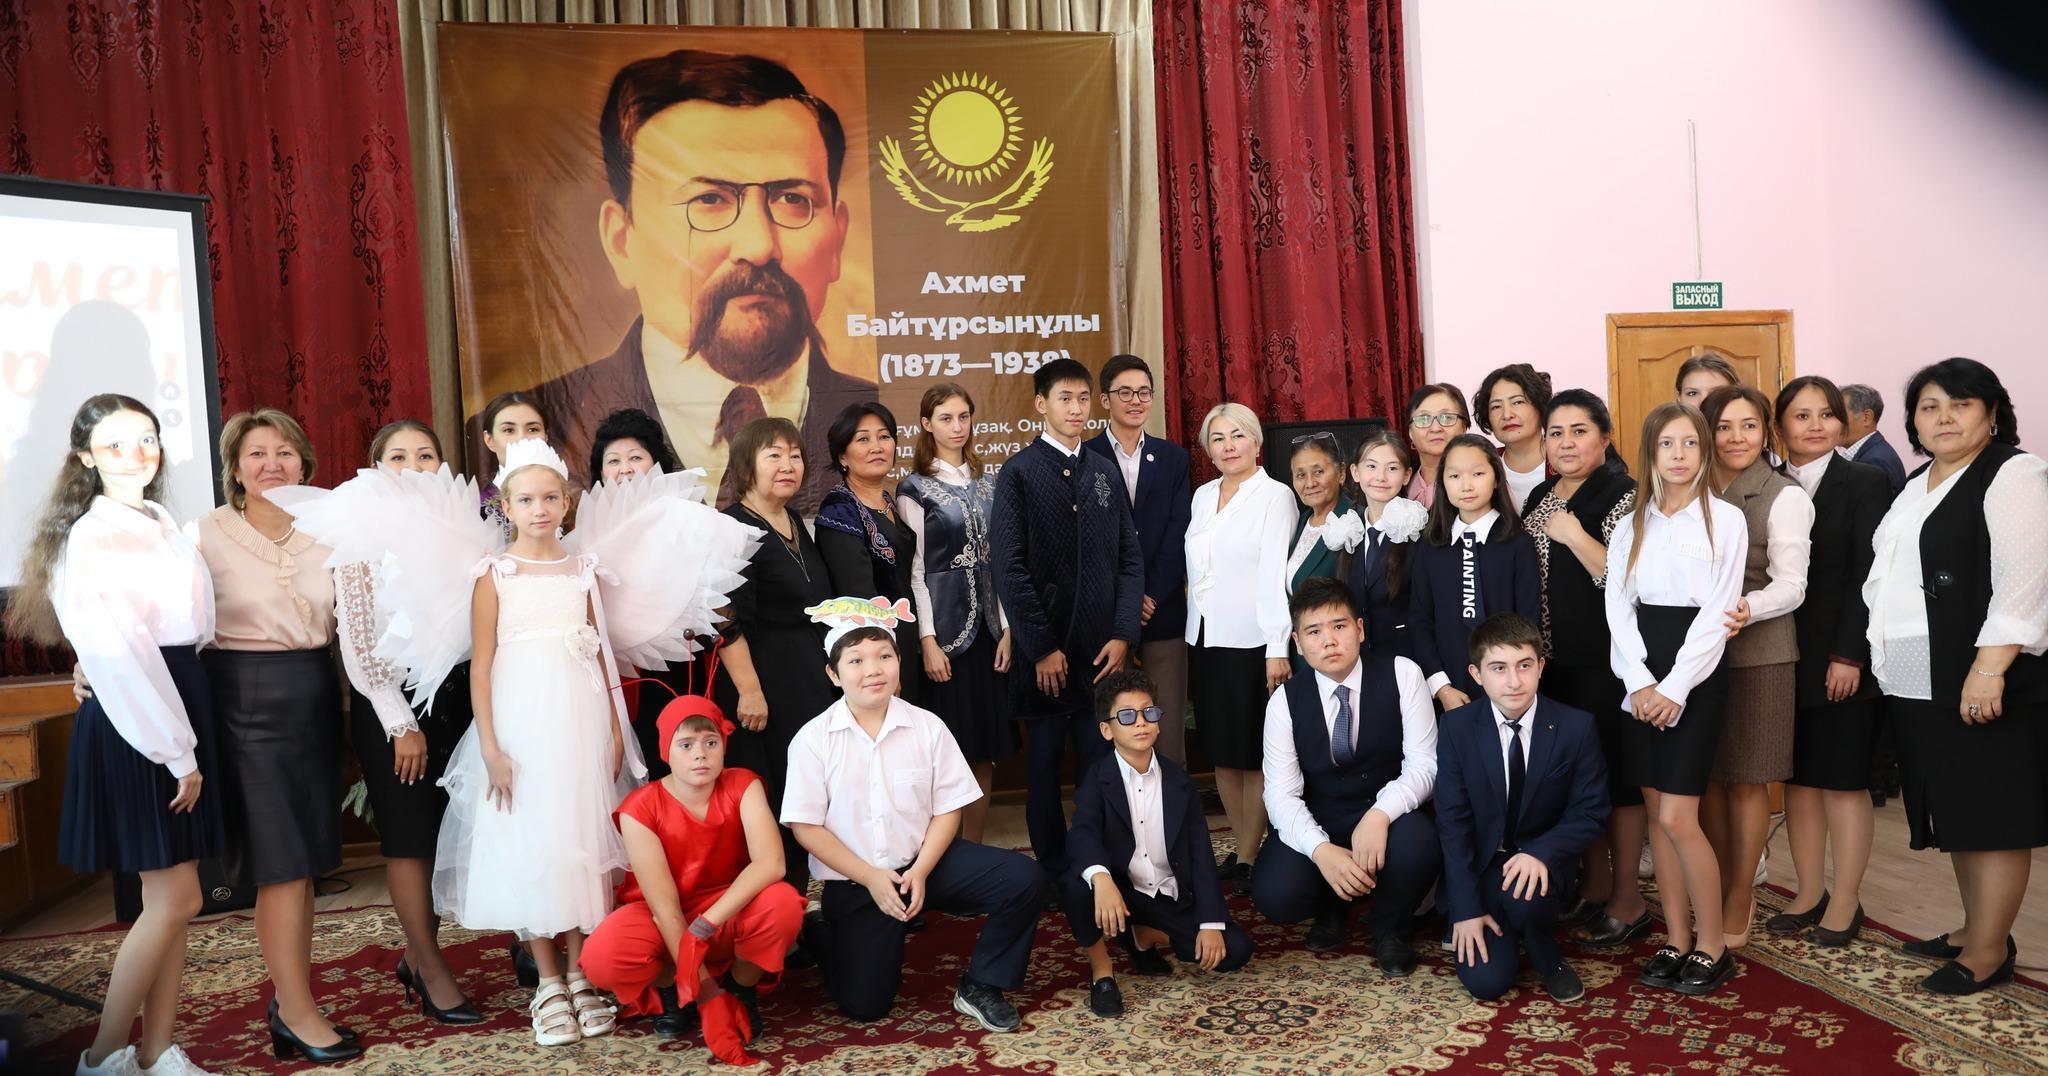 Казахстан празднует 150-летие казахского общественного и государственного деятеля, просветителя, учёного, поэта, переводчика, педагога, публициста, тюрколога Ахмета Байтурсынова